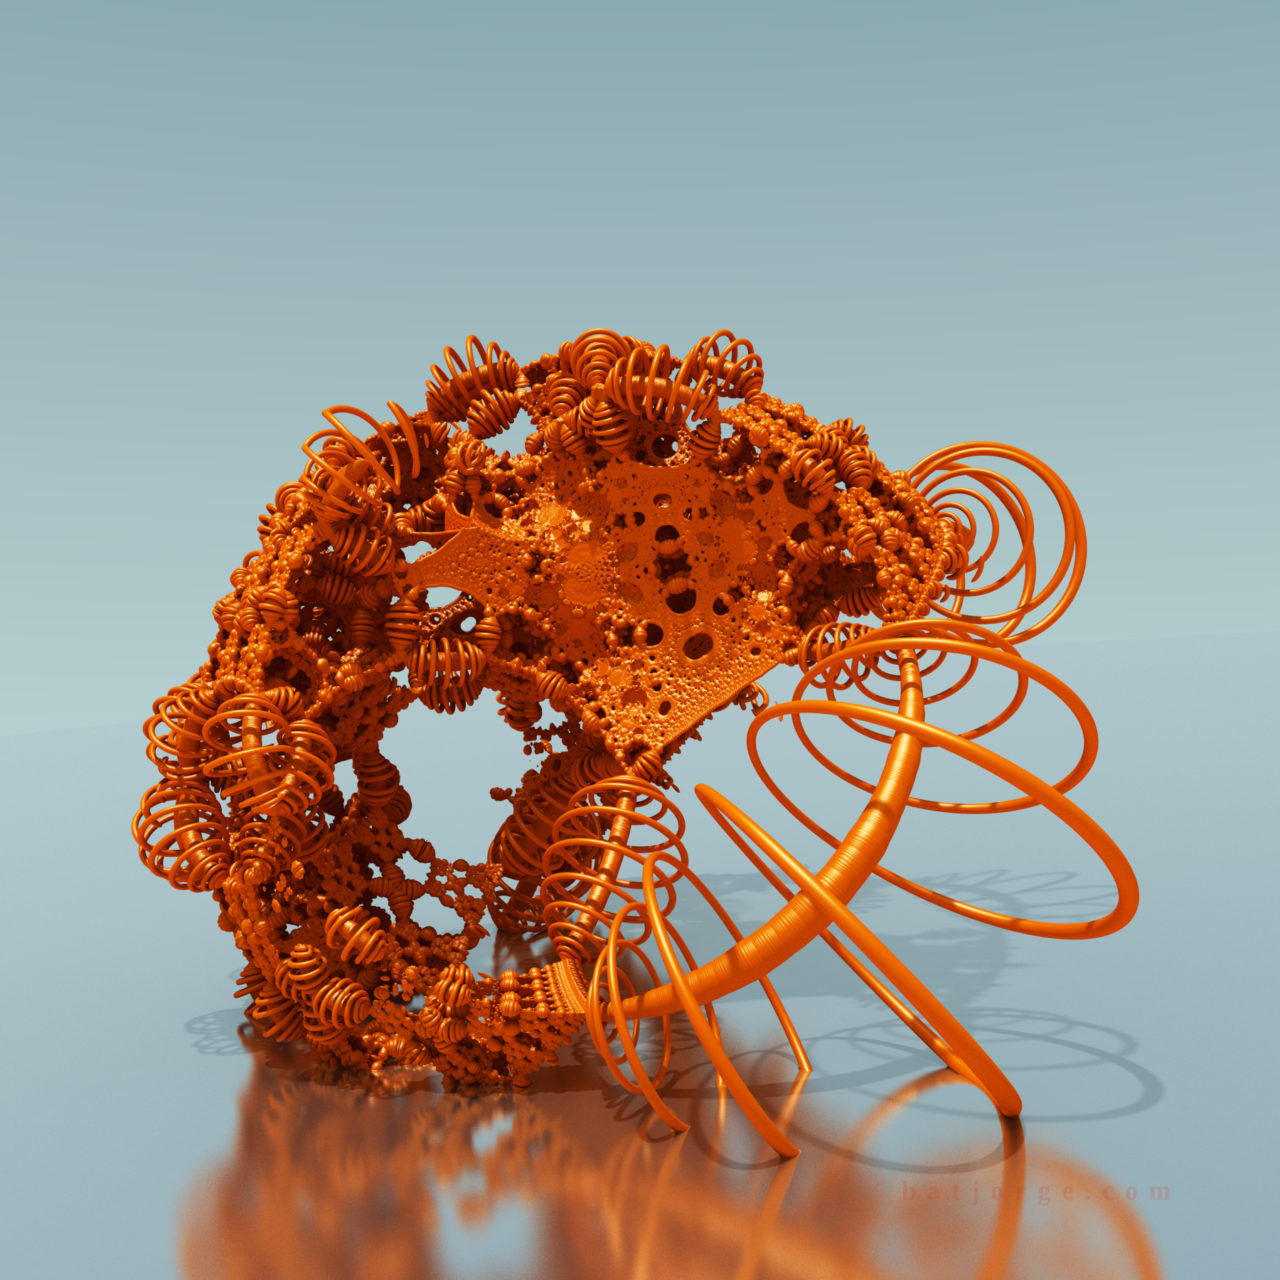 3D fractal orb. mandelbulber pseudokleinian mod 3